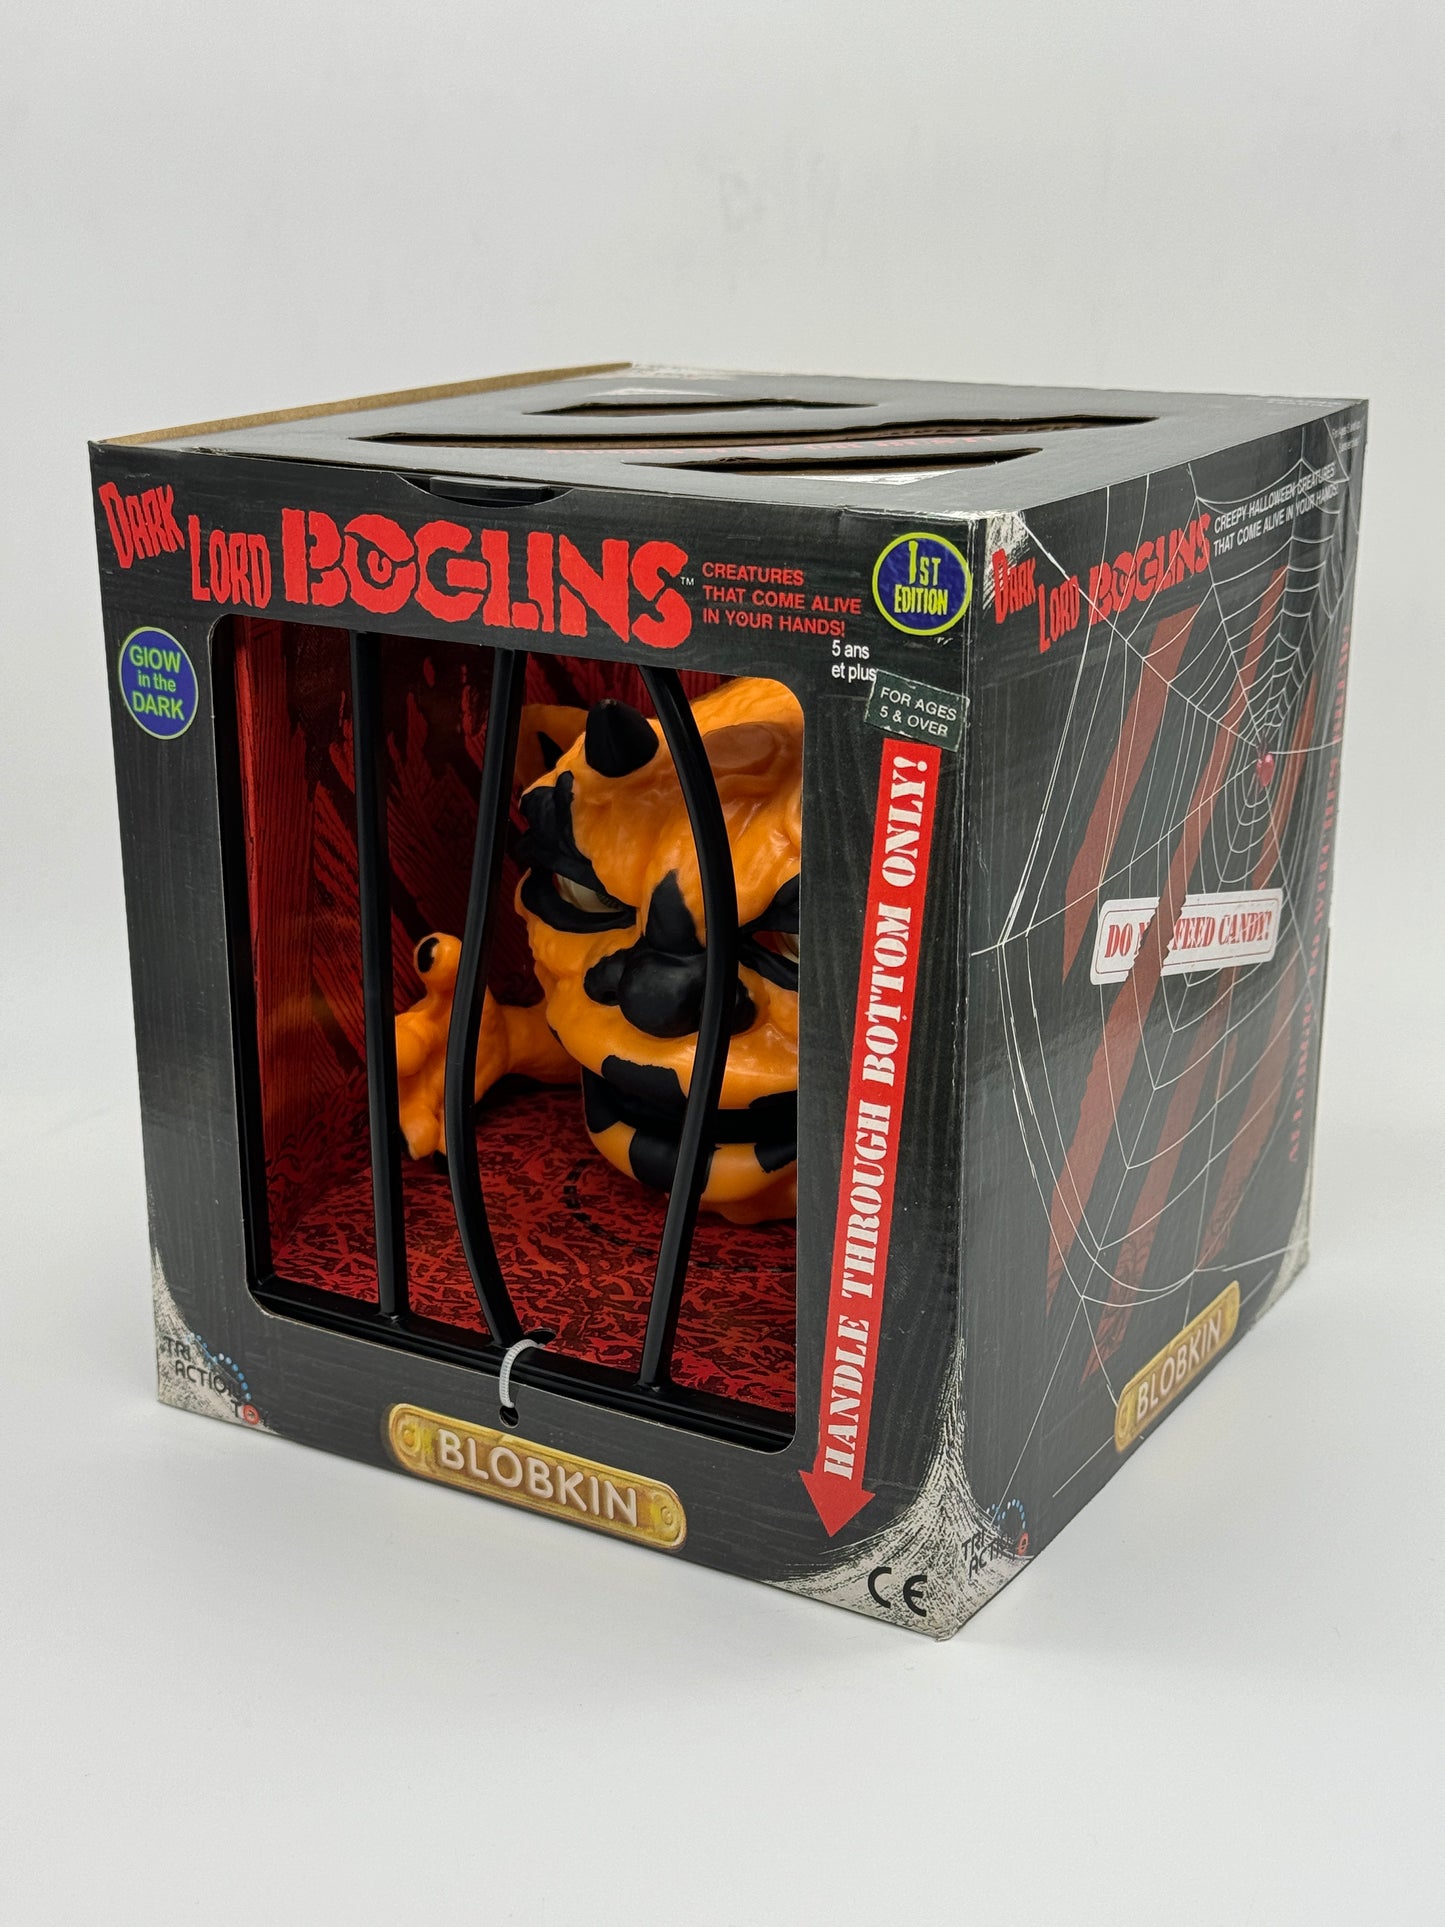 Boglins "Blobkin" Dark Lord 1st Edition Large Boglins Species Handpuppe Humungus